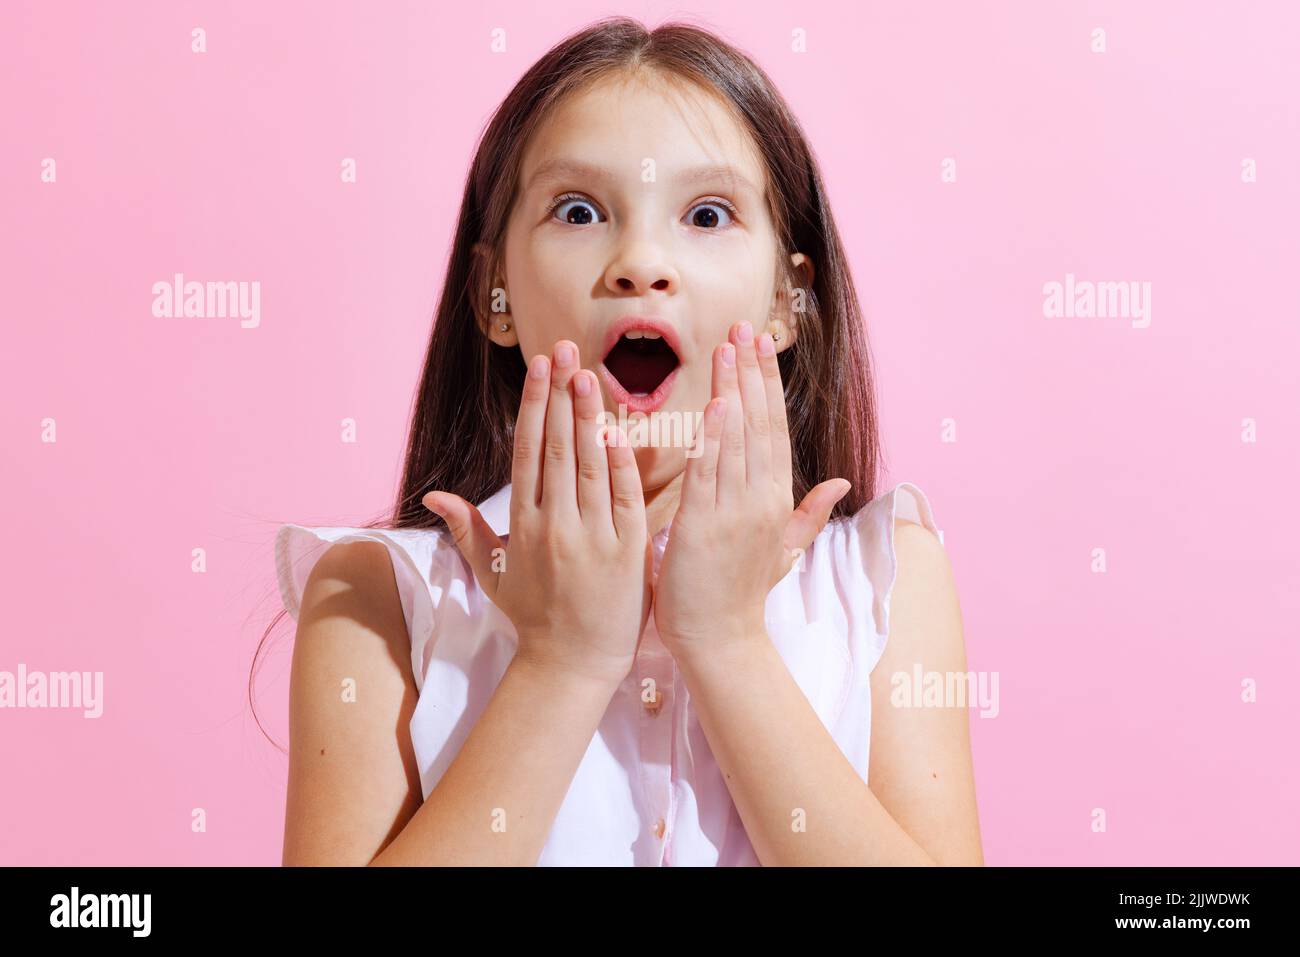 Überrascht kleine charmante Mädchen, Kind Blick auf die Kamera mit offenem Mund isoliert auf rosa Hintergrund. Konzept der Kinder Emotionen, Mode, Schönheit Stockfoto